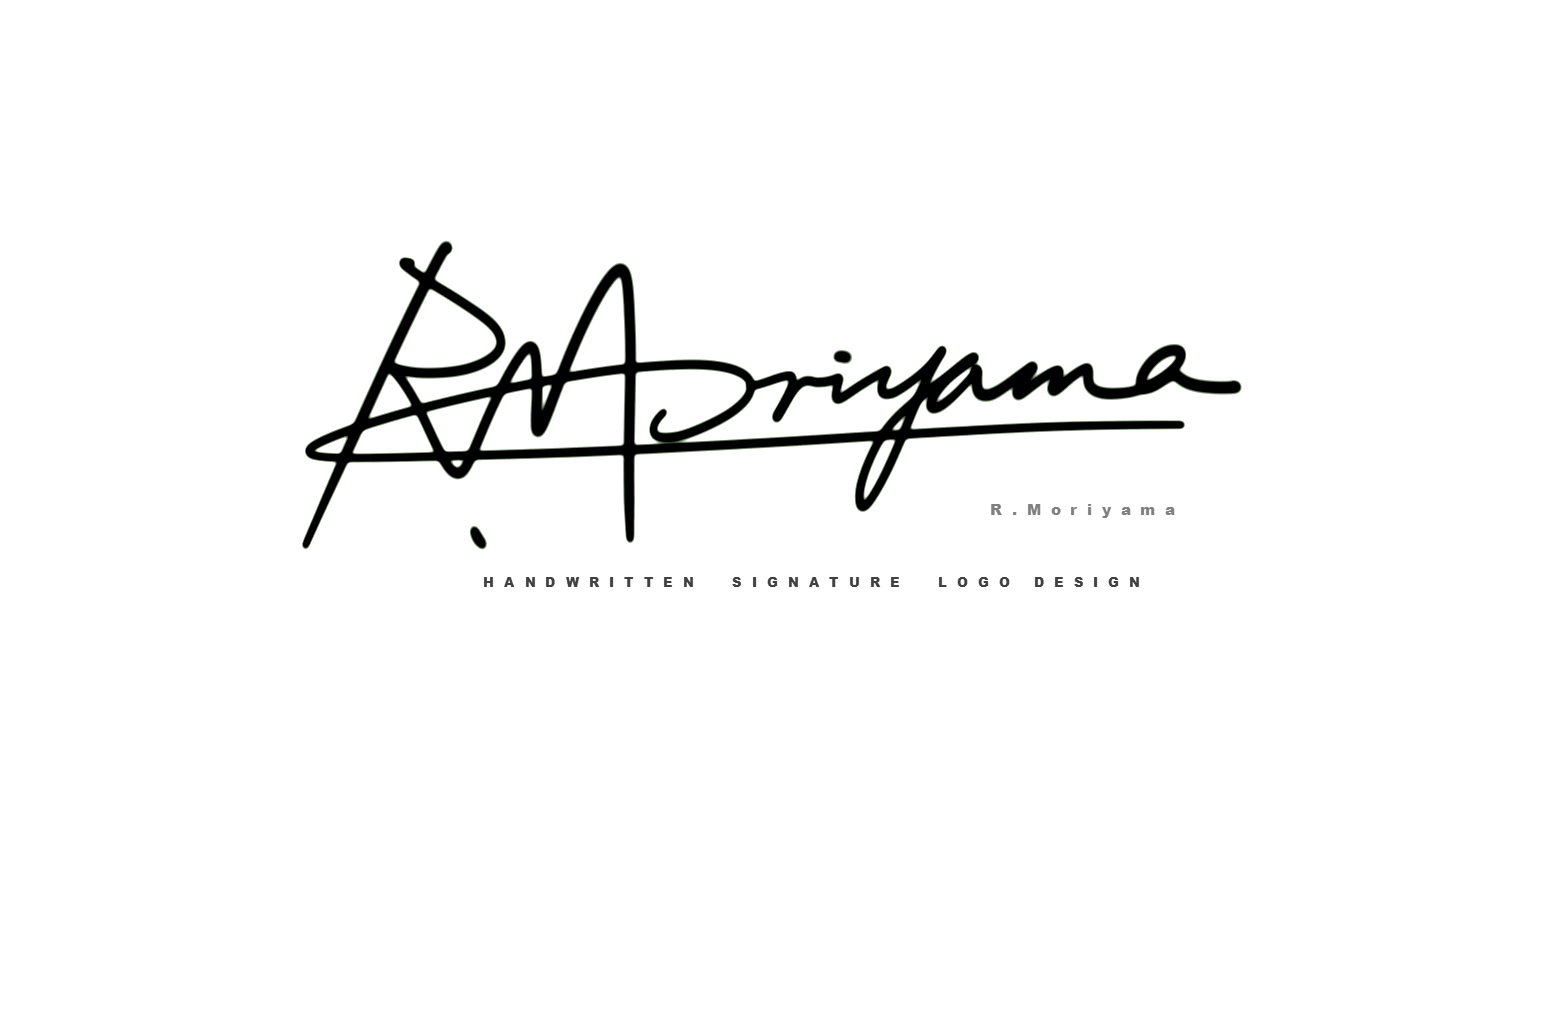 英文签名设计作品丨签名艺术丨signature logo design